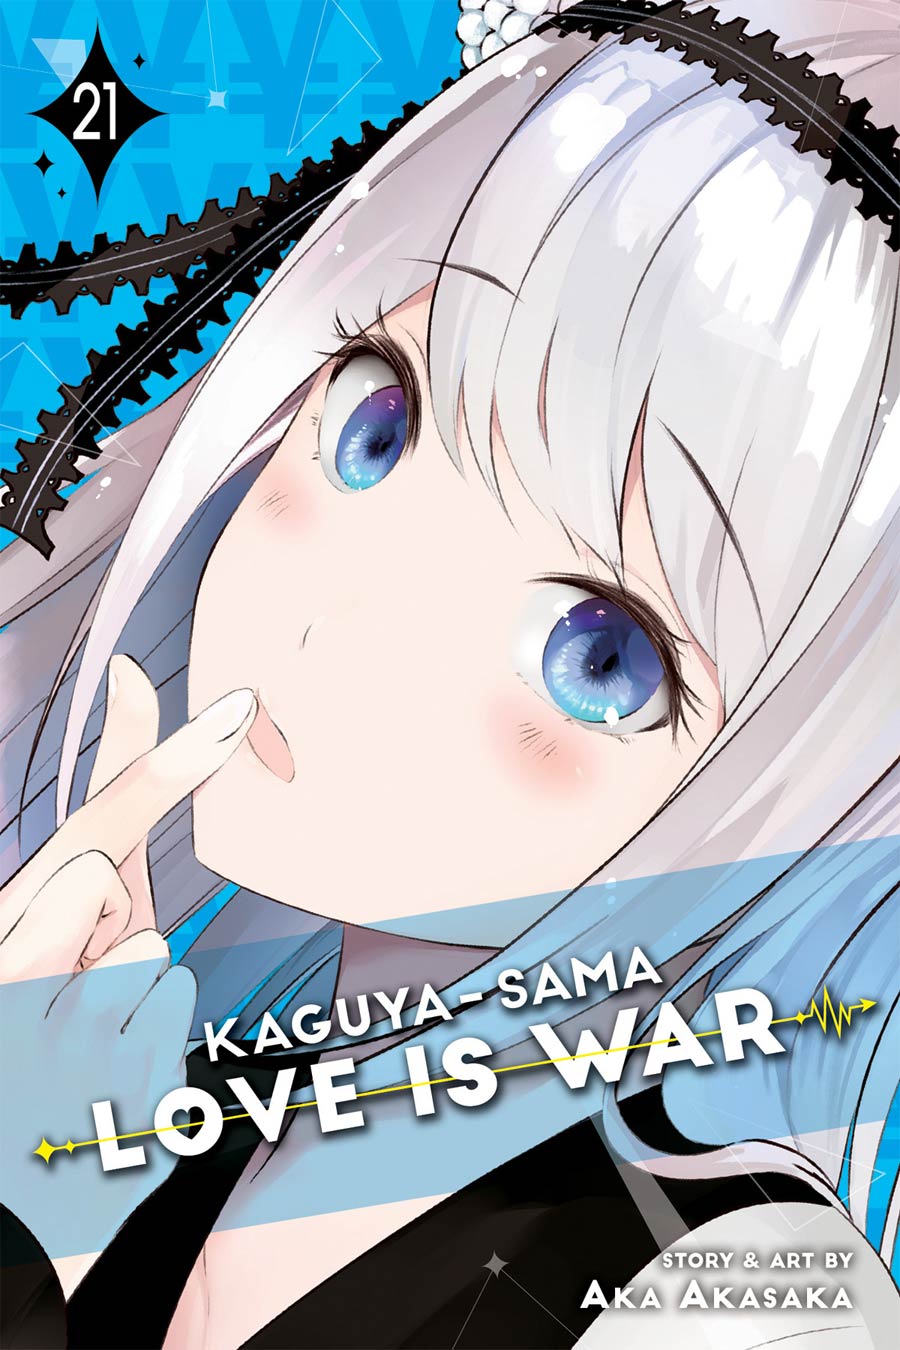 Kaguya-Sama Love Is War Vol 21 GN